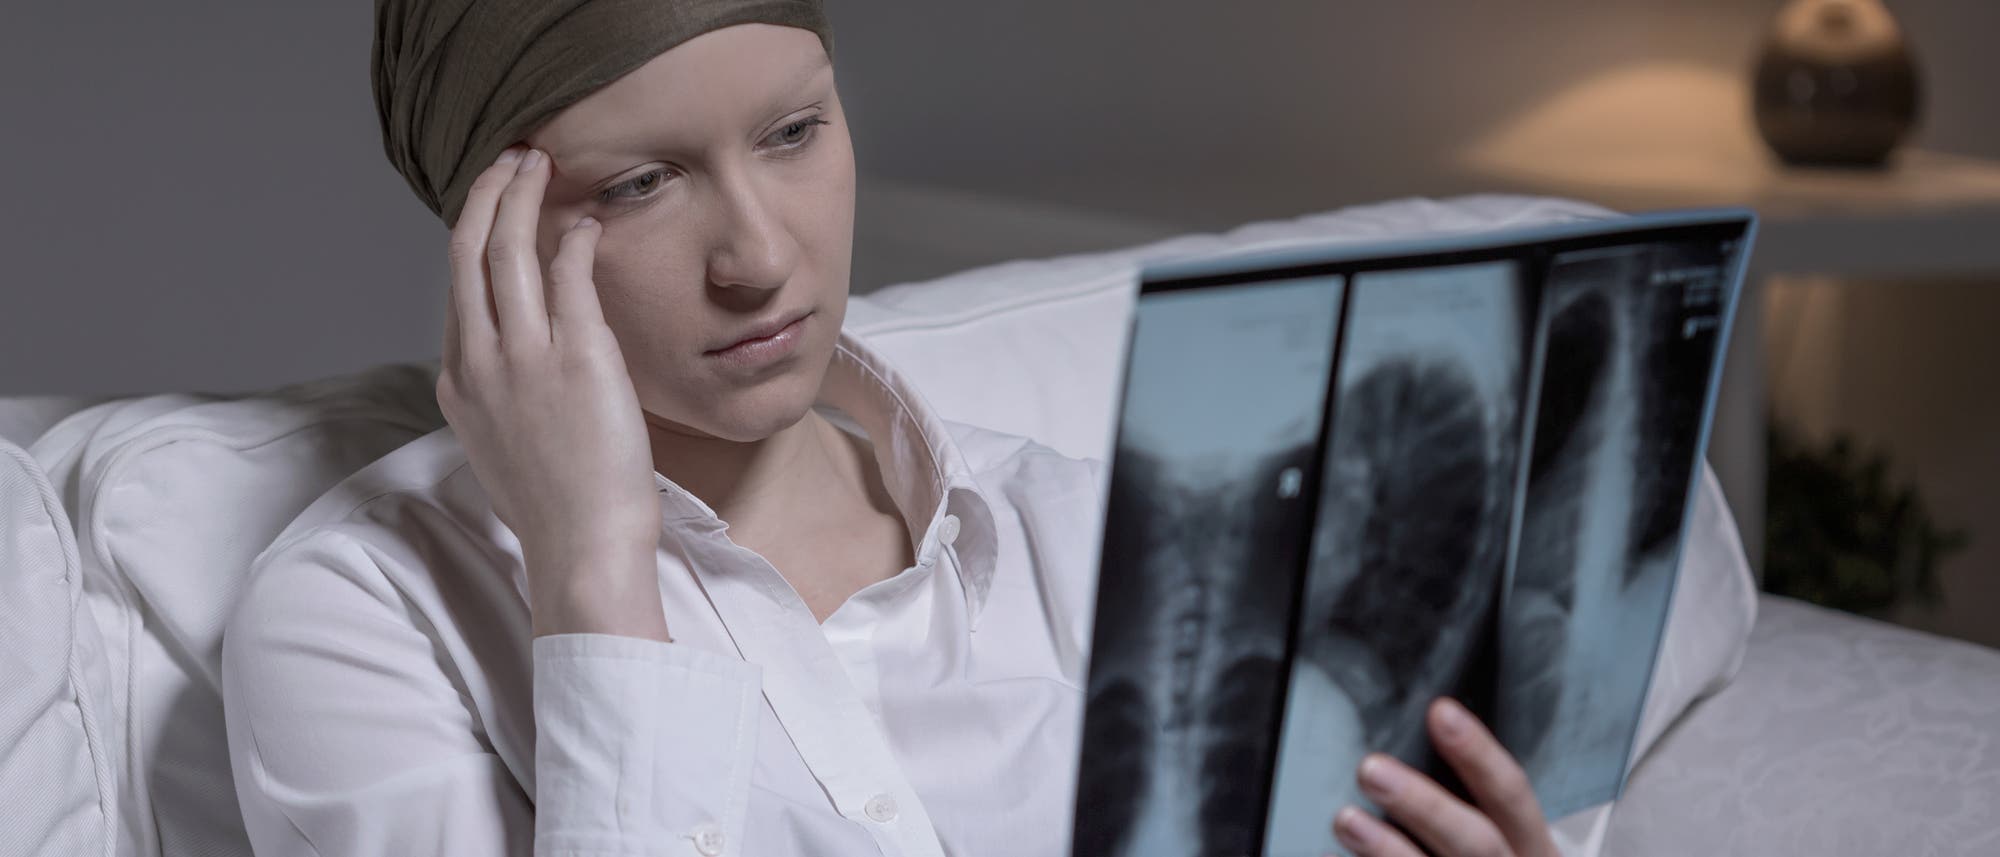 Eine junge Frau mit Kopftuch sitzt im Krankenhausbett und fasst sich an den Kopf, während sie ein Röntgenbild betrachtet. Krankenhäuser bieten erfahrungsgemäß eine große Auswahl von Anlässen, sich an den Kopf zu fassen.